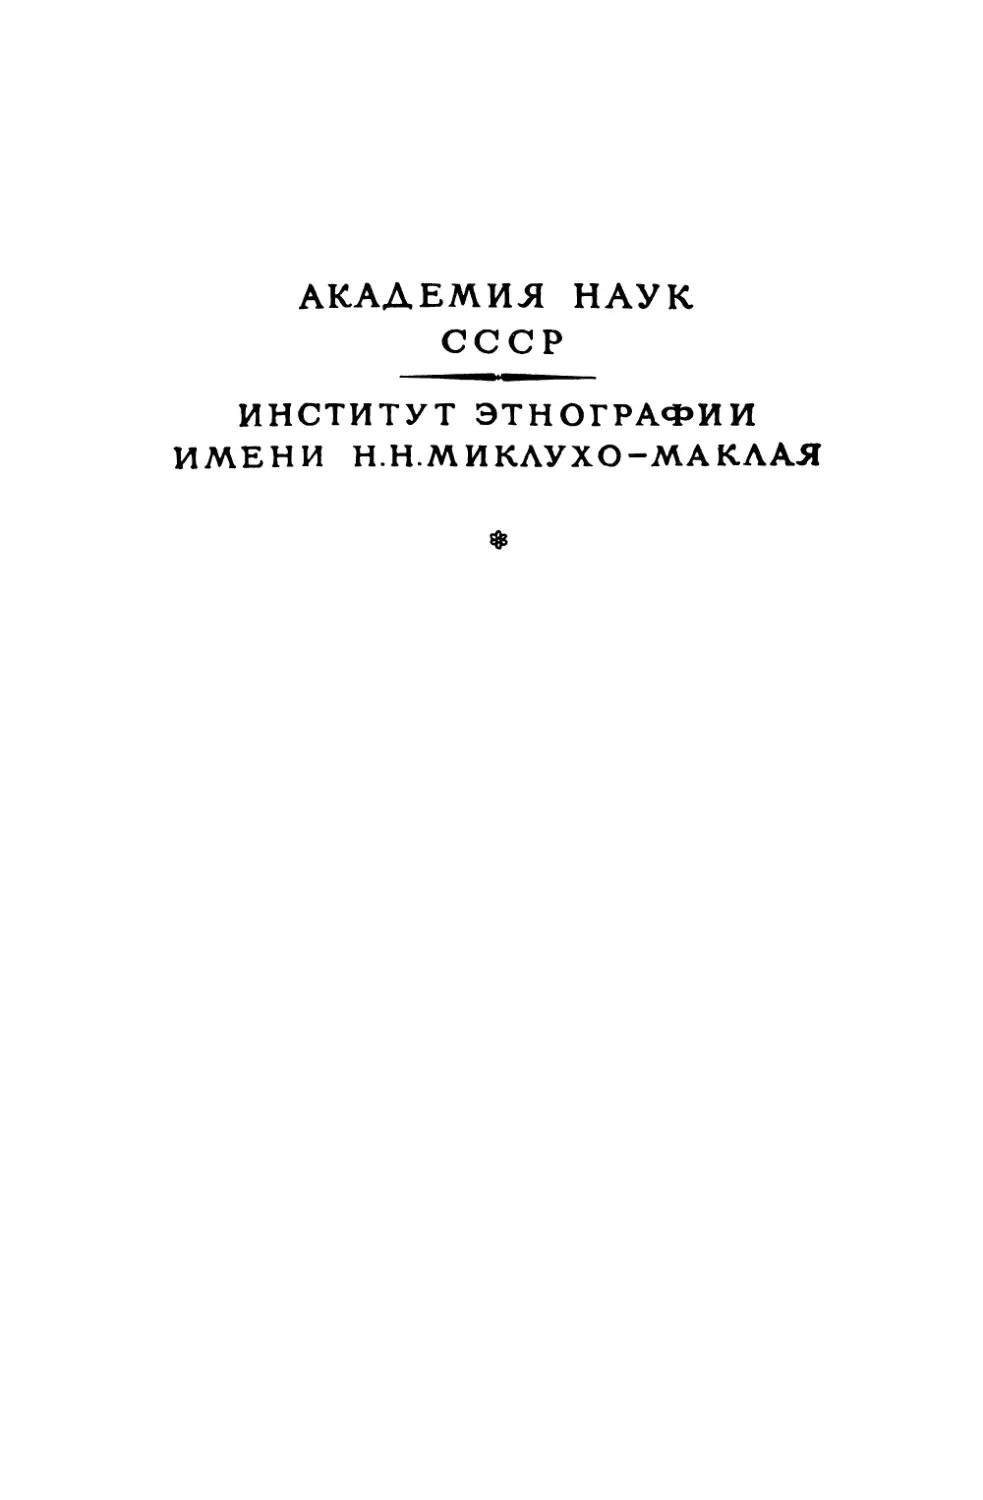 Народы Средней Азии и Казахстана. Т.2 - 1963